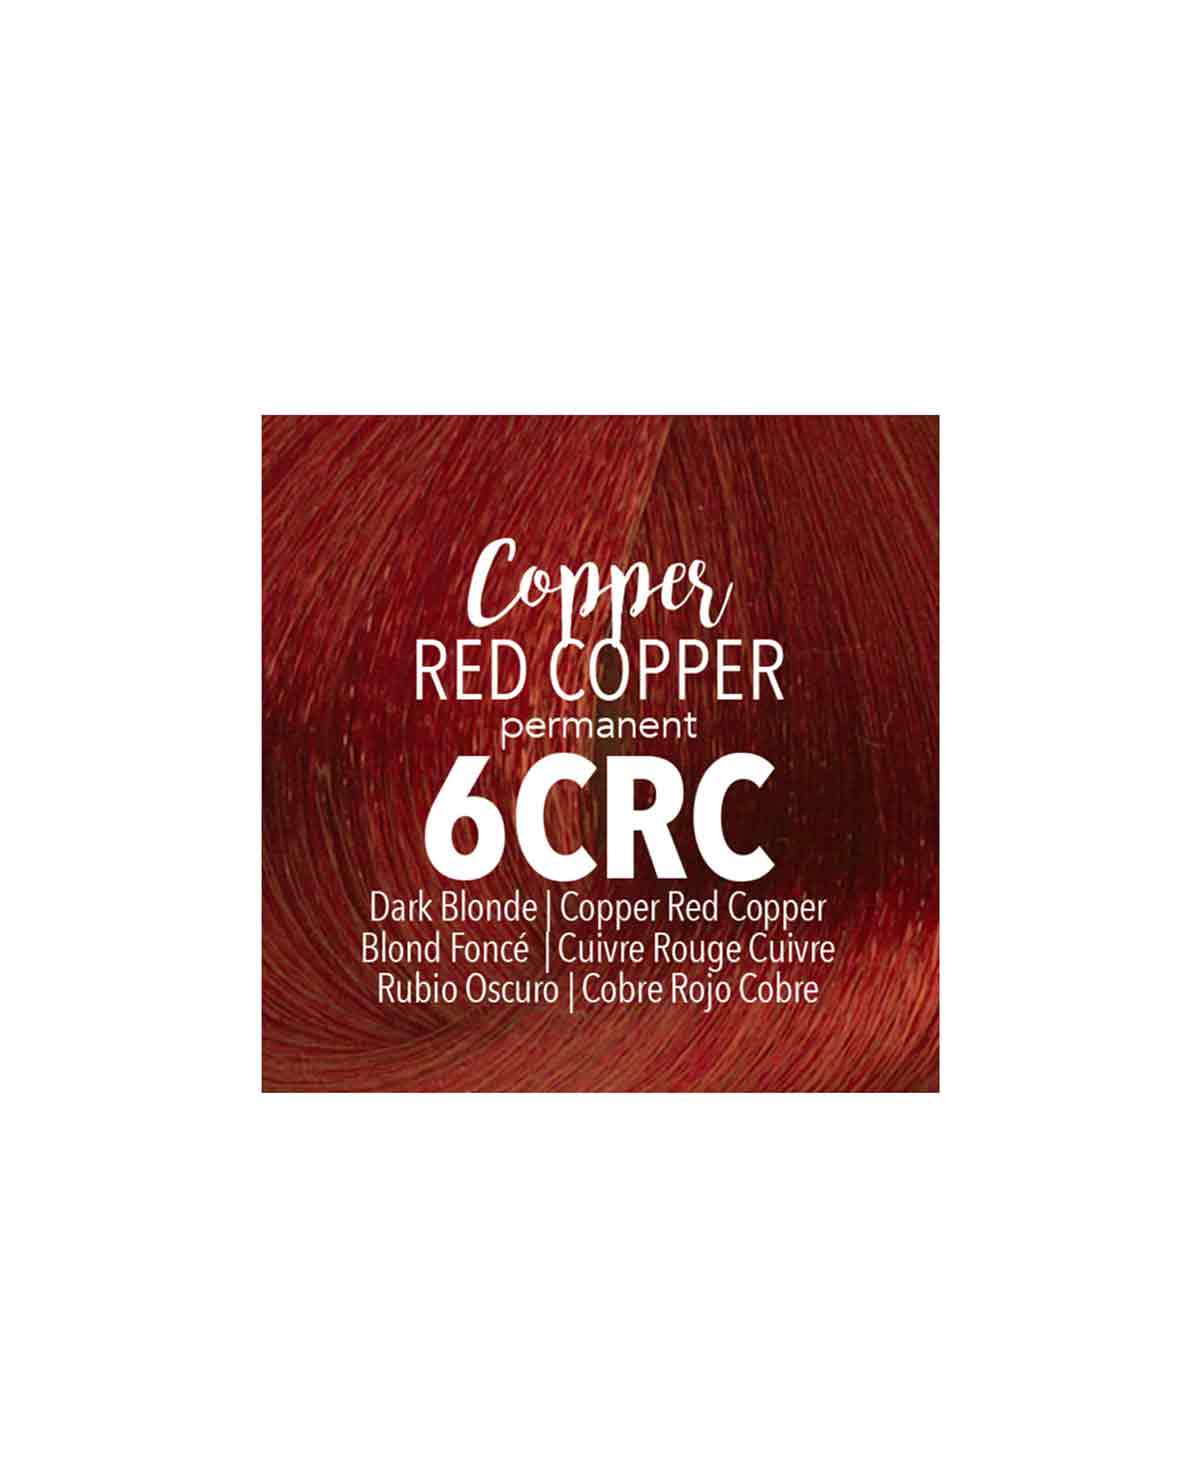 Mydentity - 6CRC Dark Blonde Copper Red Copper